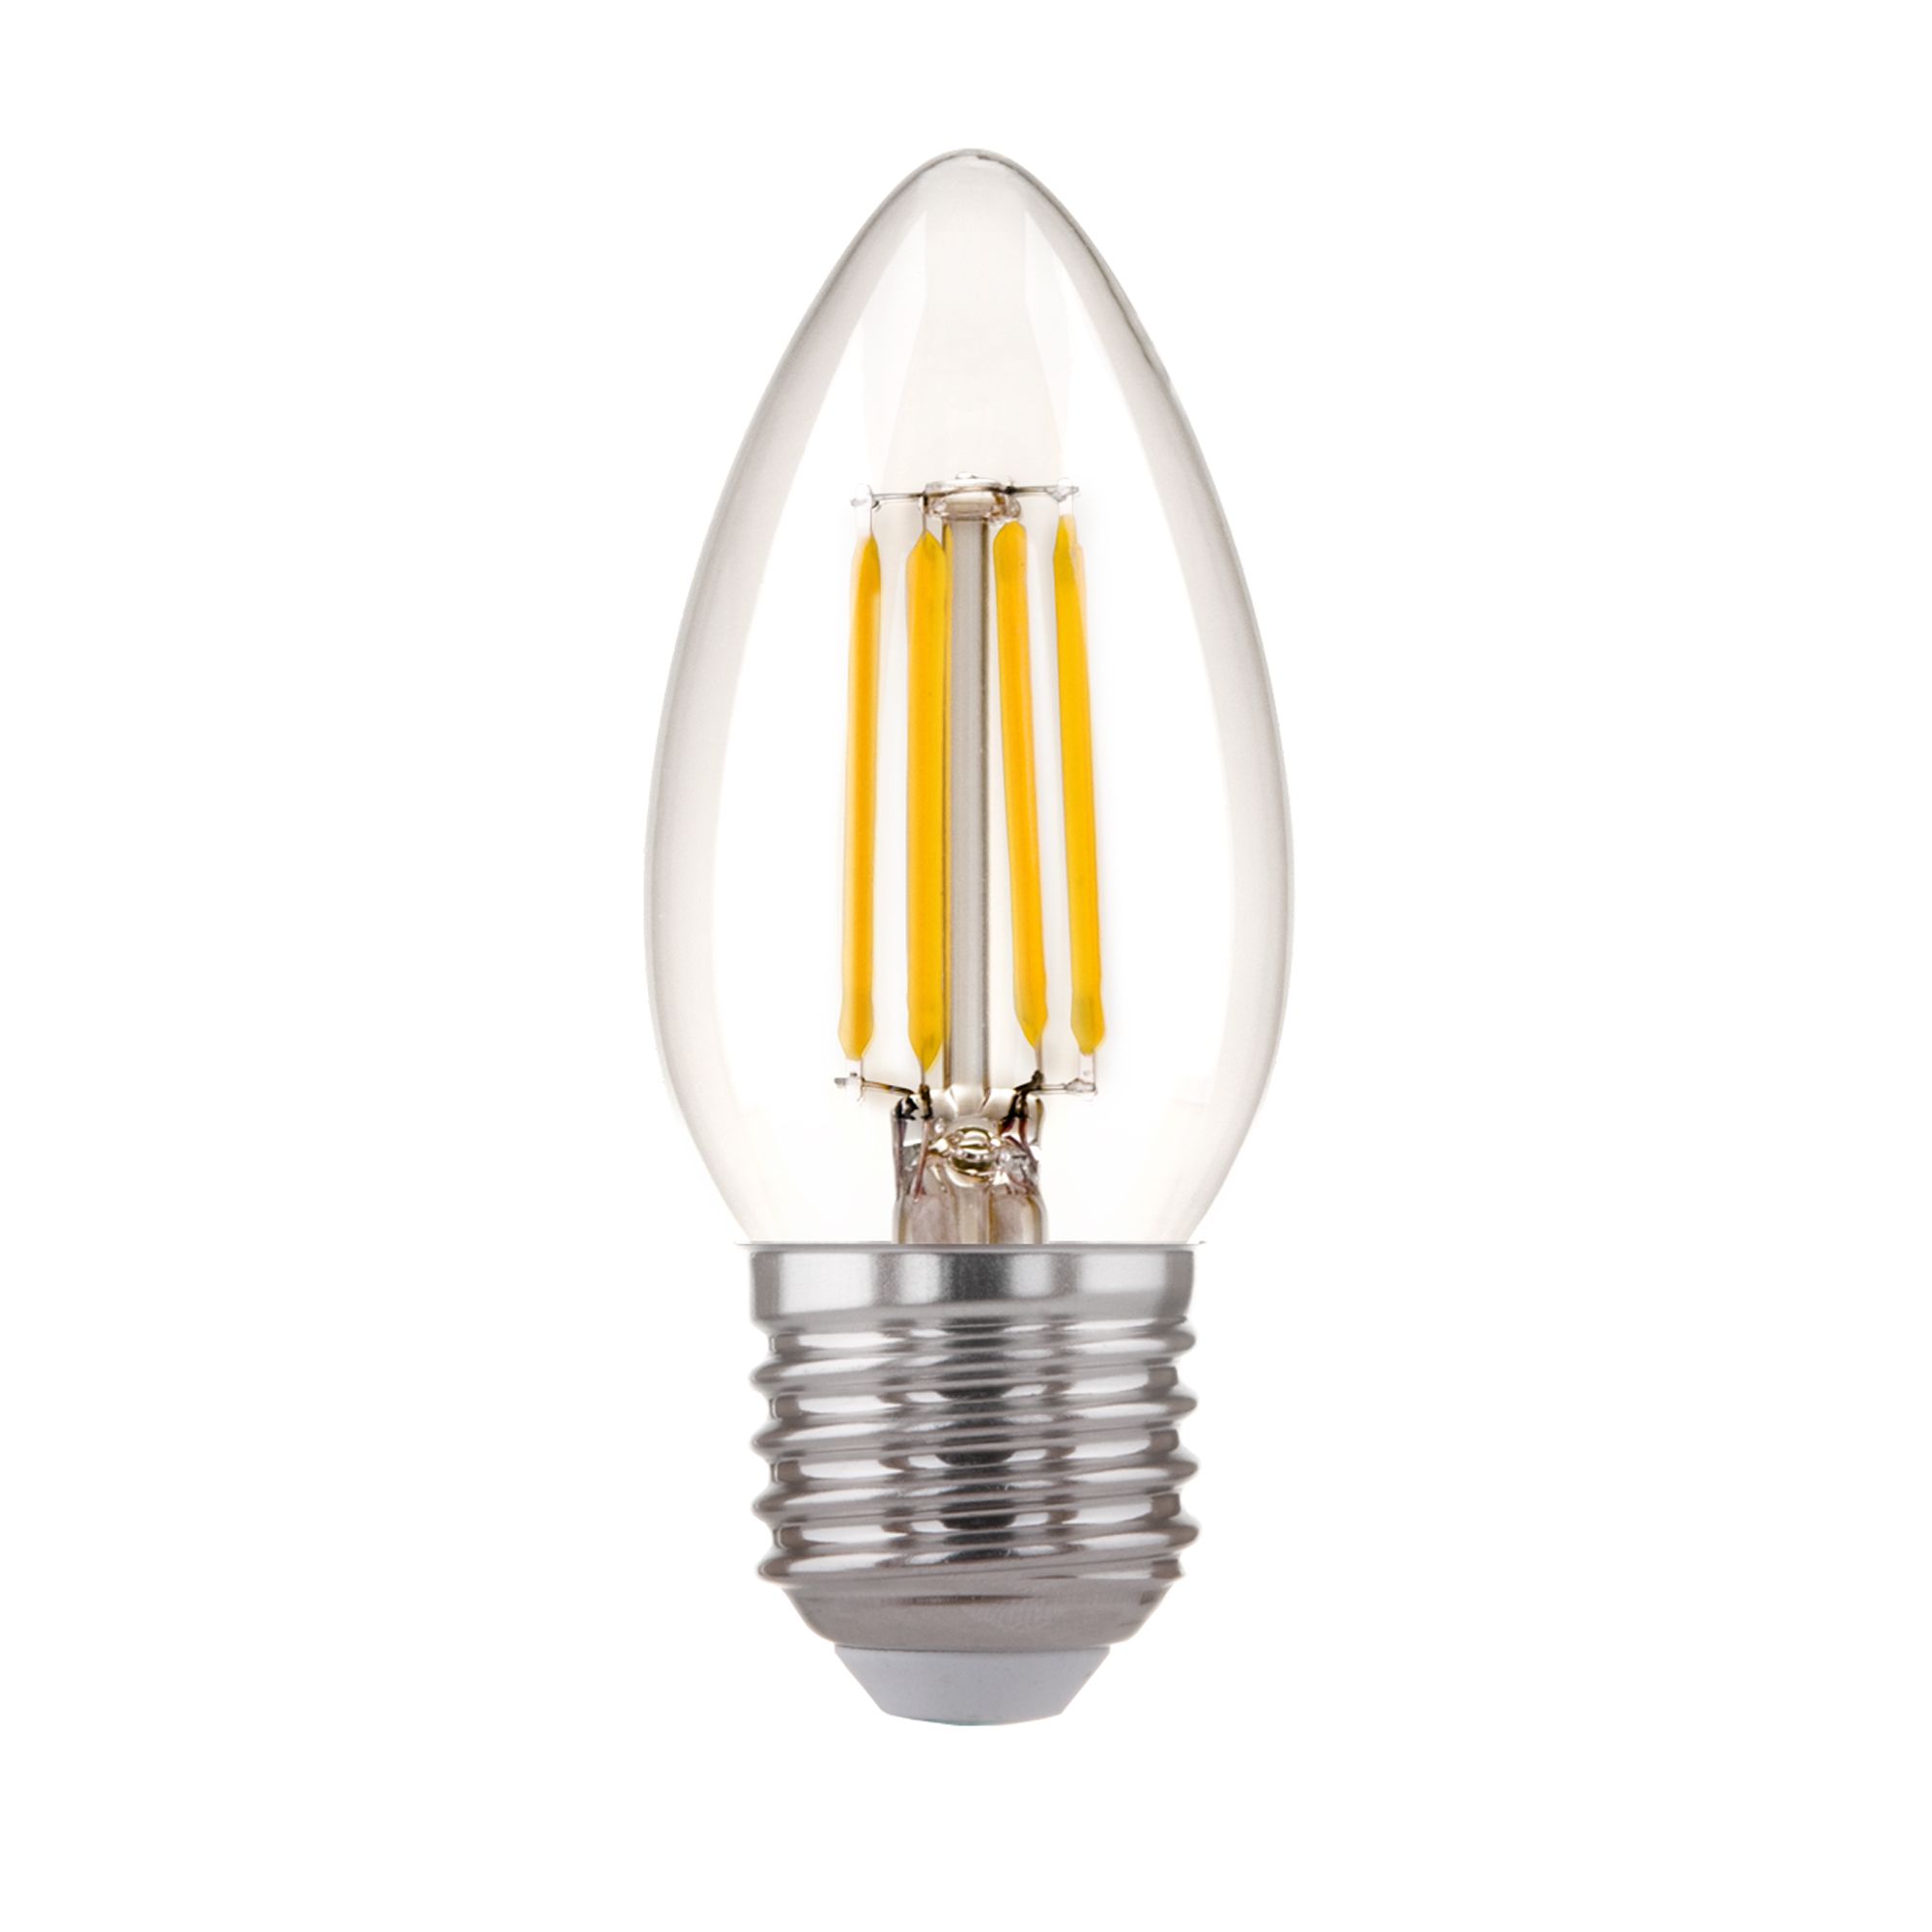 Филаментная светодиодная лампа "Свеча" C35 7W 4200K E27 (C35 прозрачный) BLE2736. Фото 2